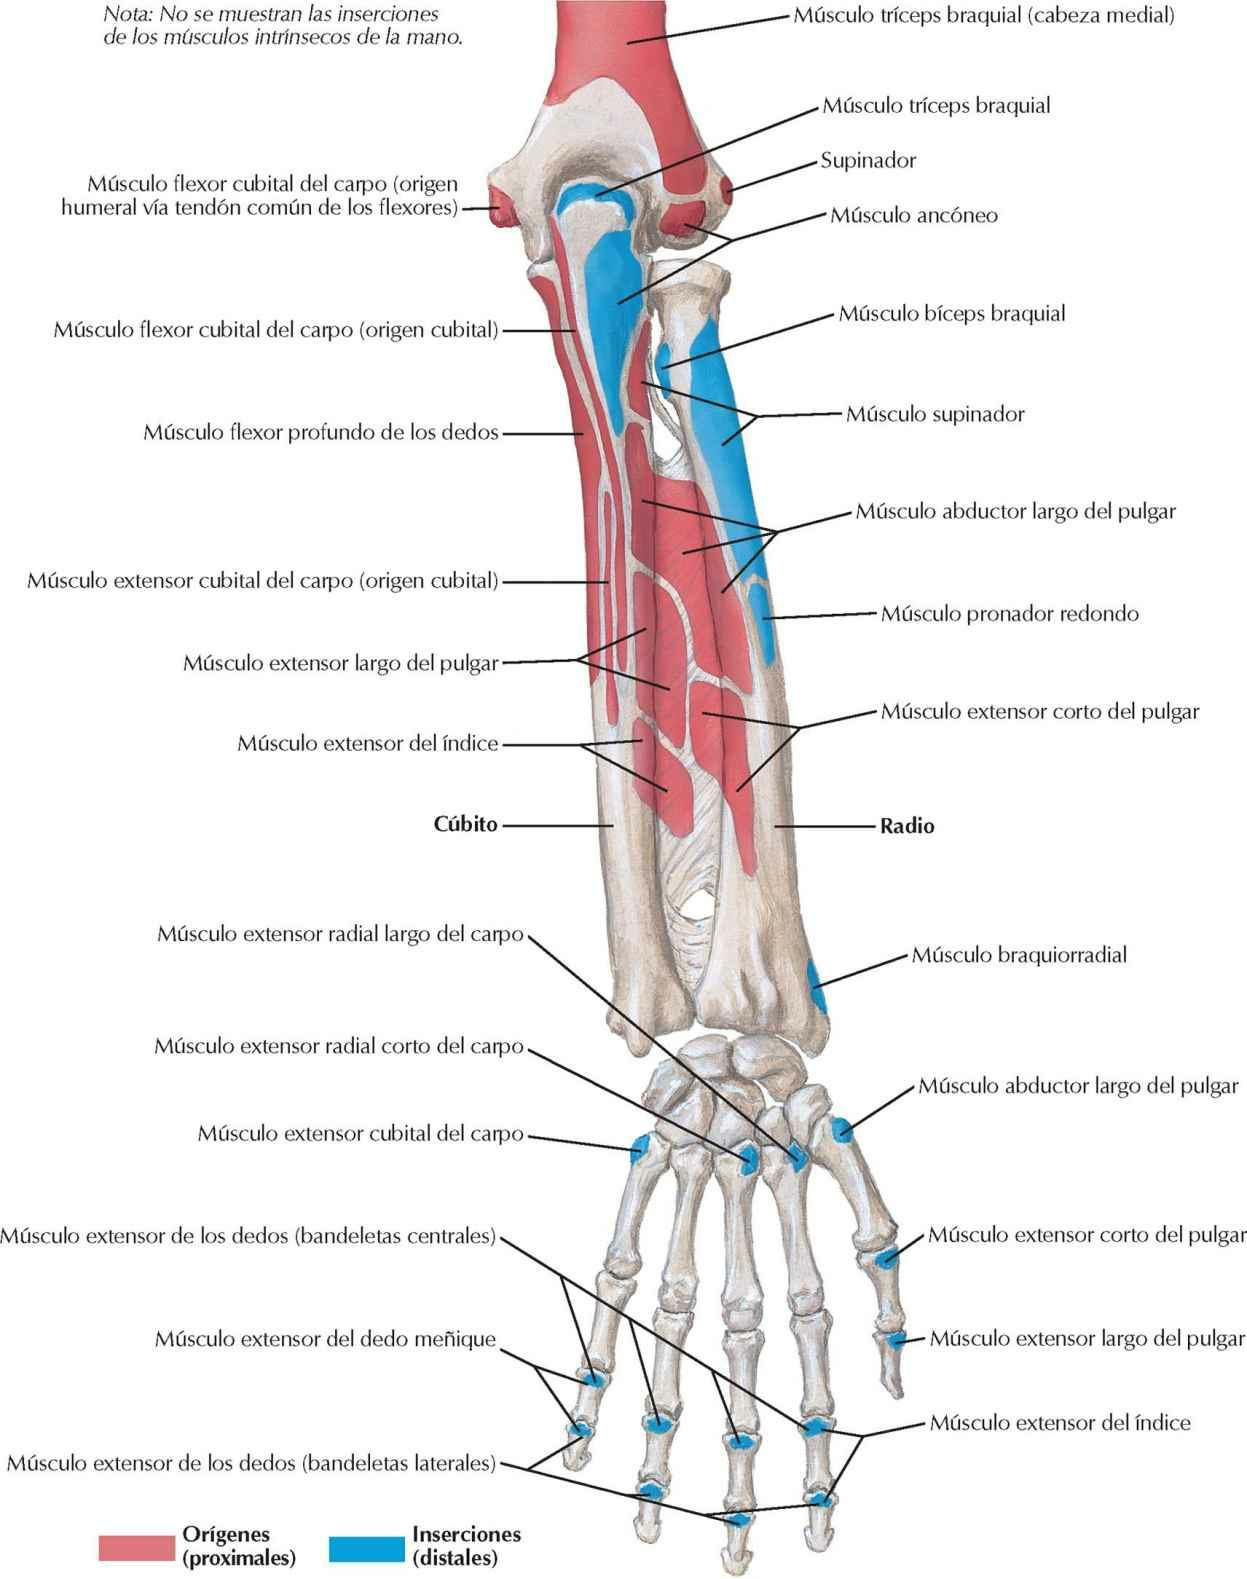 Inserciones de los músculos del antebrazo: visión posterior